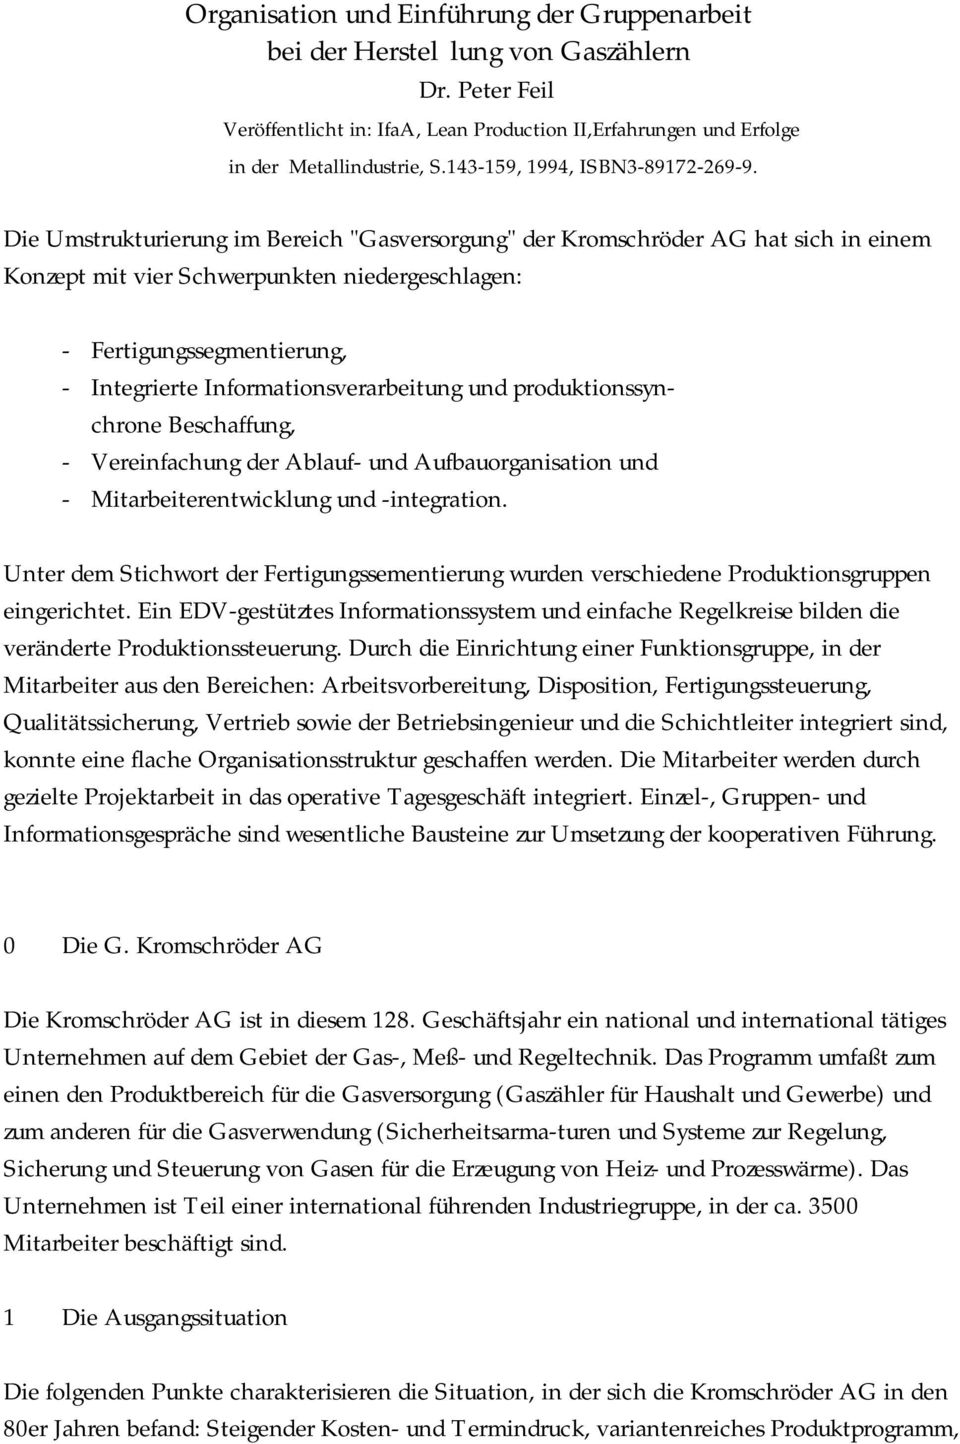 Die Umstrukturierung im Bereich "Gasversorgung" der Kromschröder AG hat sich in einem Konzept mit vier Schwerpunkten niedergeschlagen: - Fertigungssegmentierung, - Integrierte